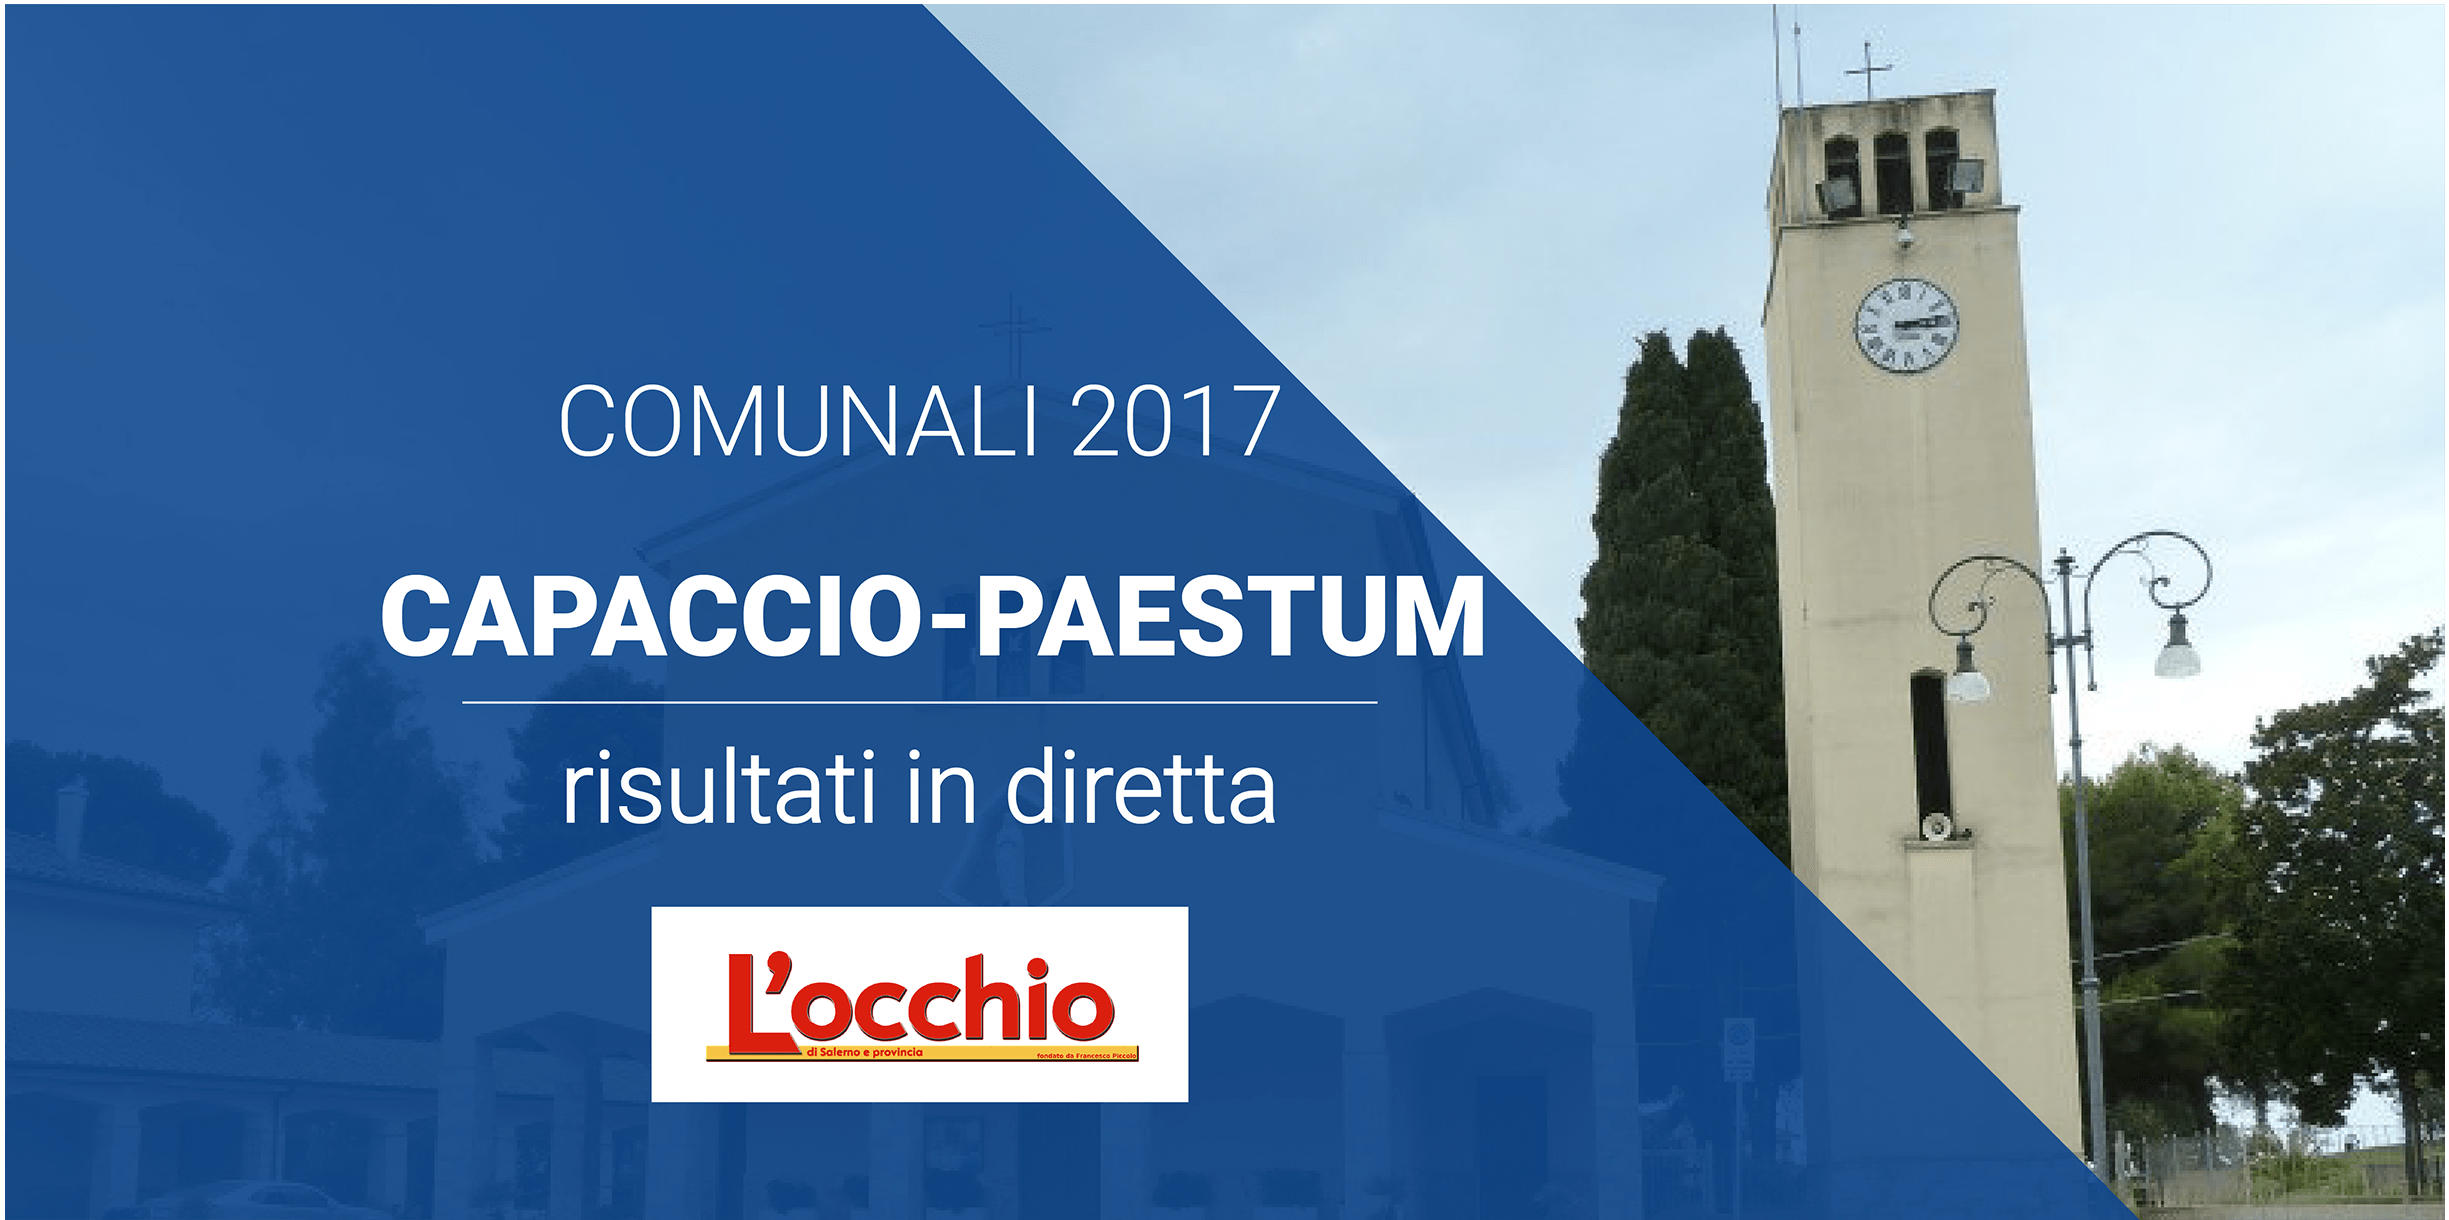 Elezioni Comunali 2017 a Capaccio Paestum i risultati